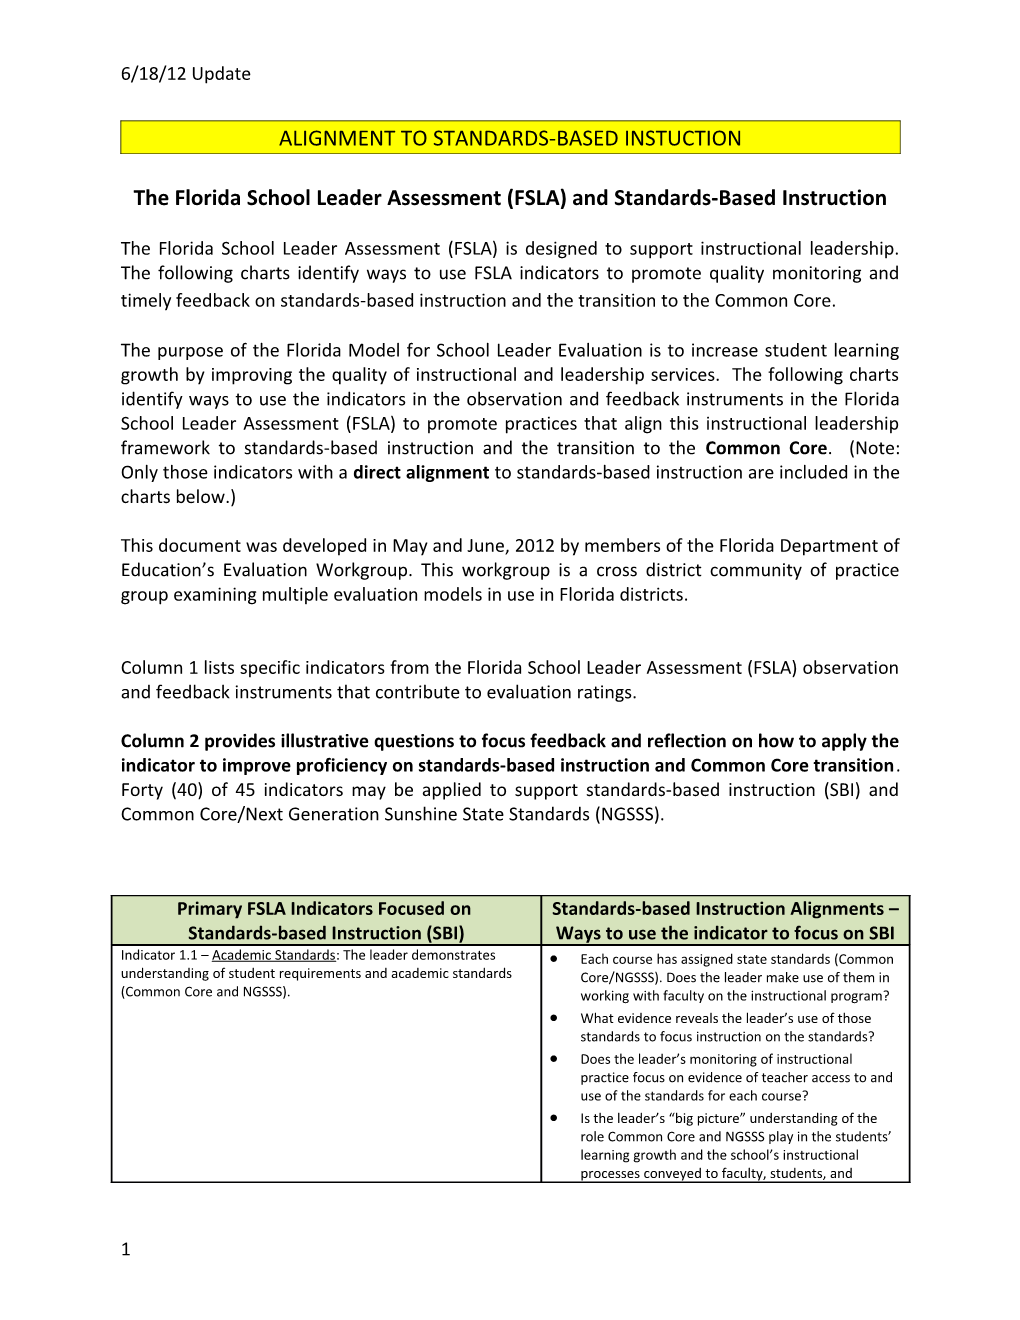 The Florida School Leader Assessment (FSLA) and Standards-Based Instruction